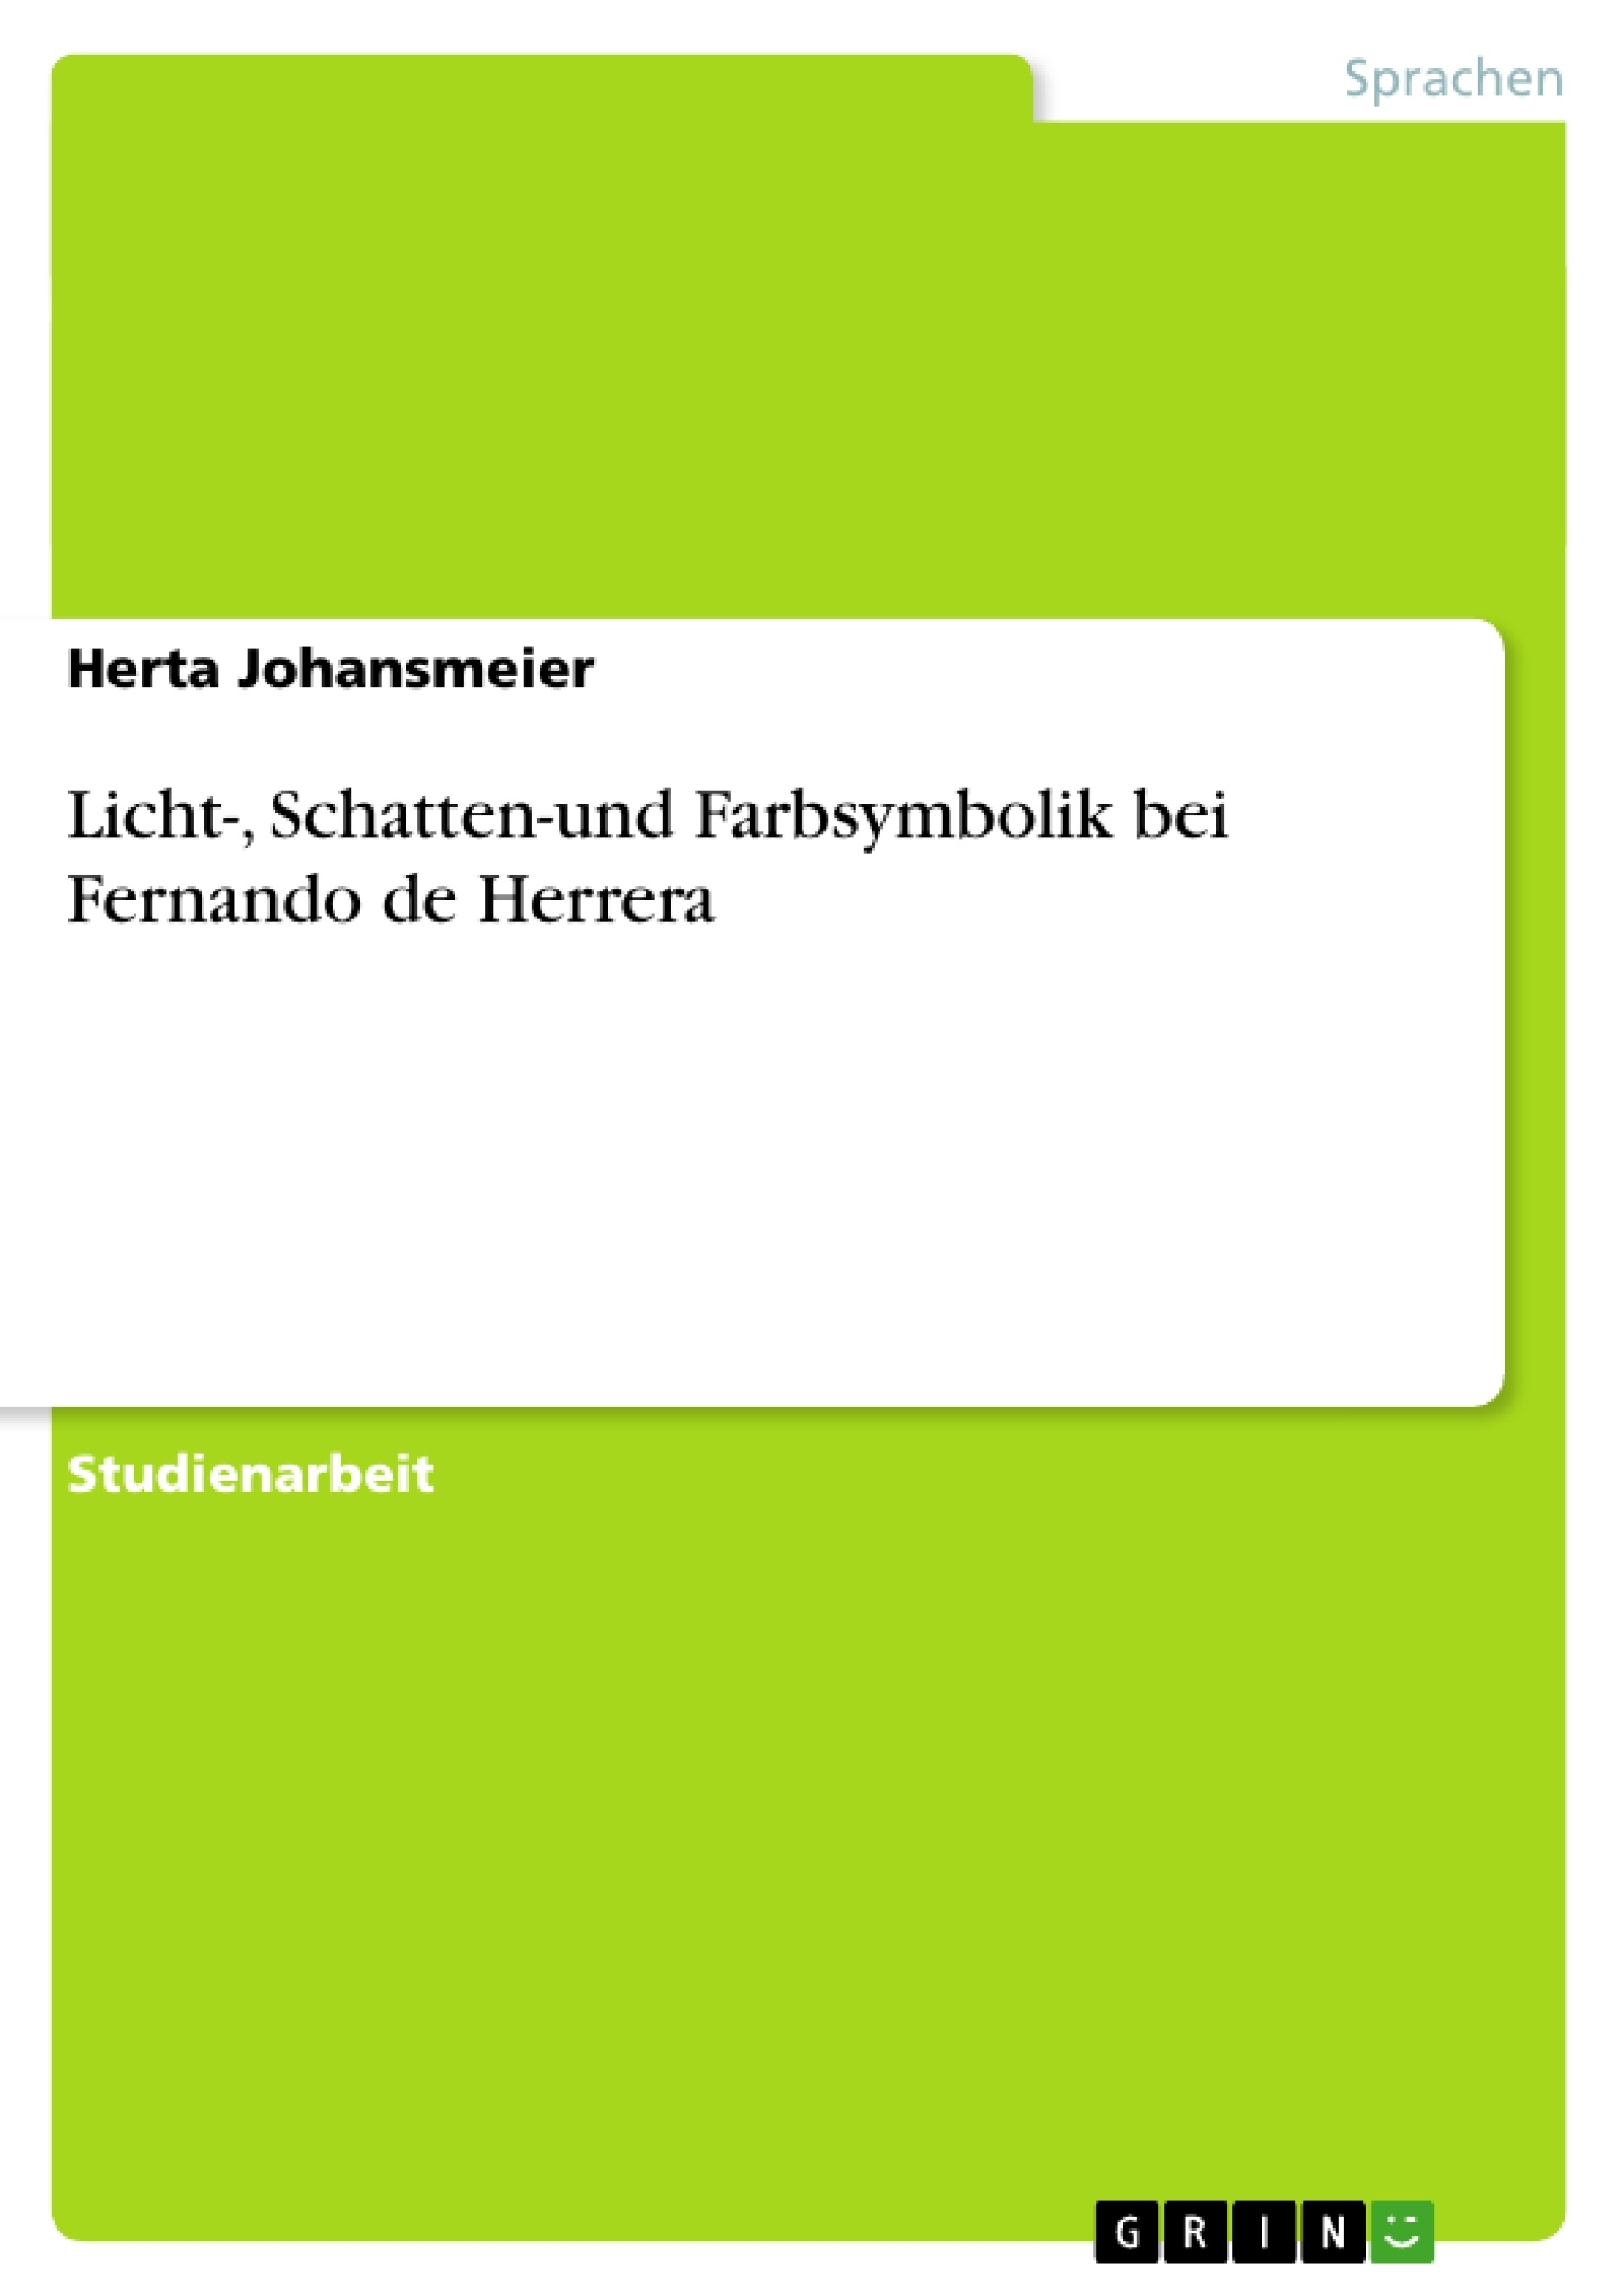 Título: Licht-, Schatten-und Farbsymbolik bei Fernando de Herrera